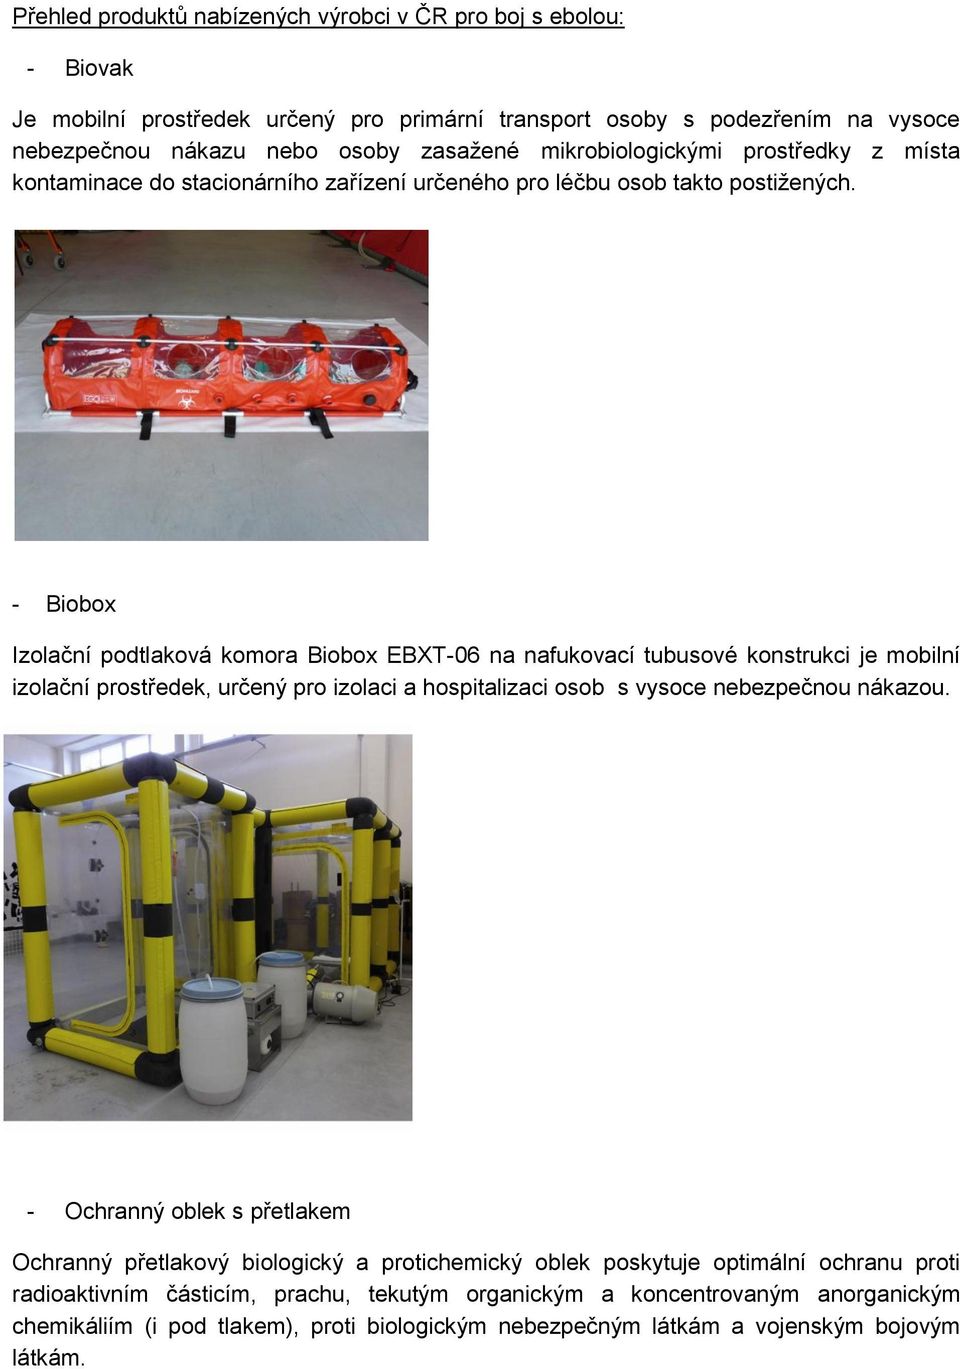 - Biobox Izolační podtlaková komora Biobox EBXT-06 na nafukovací tubusové konstrukci je mobilní izolační prostředek, určený pro izolaci a hospitalizaci osob s vysoce nebezpečnou nákazou.